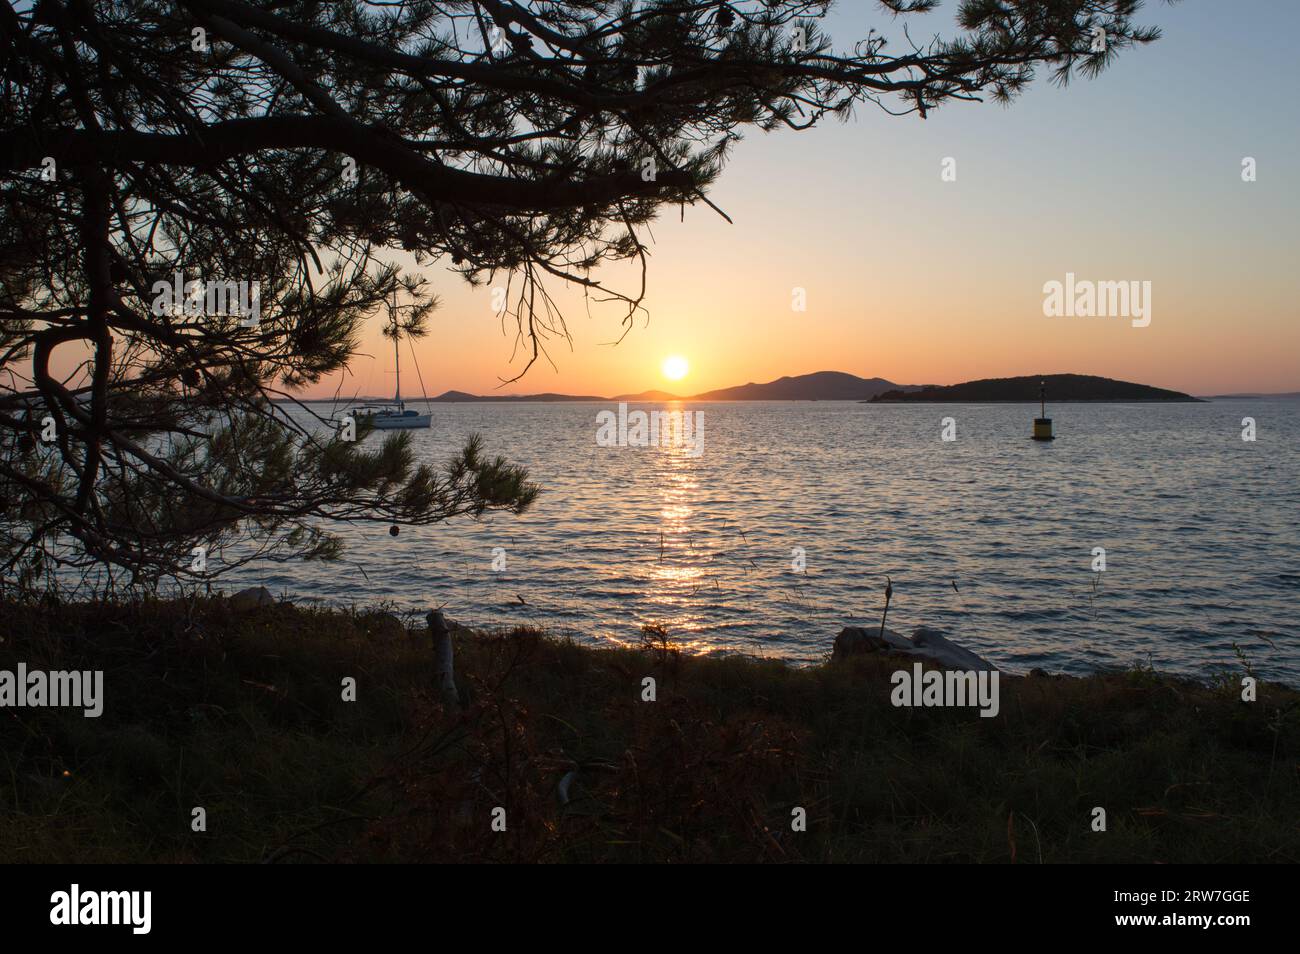 Magnifique coucher de soleil sur la mer Adriatique, en regardant l'île de Pasman, à Vrgada, Croatie Banque D'Images